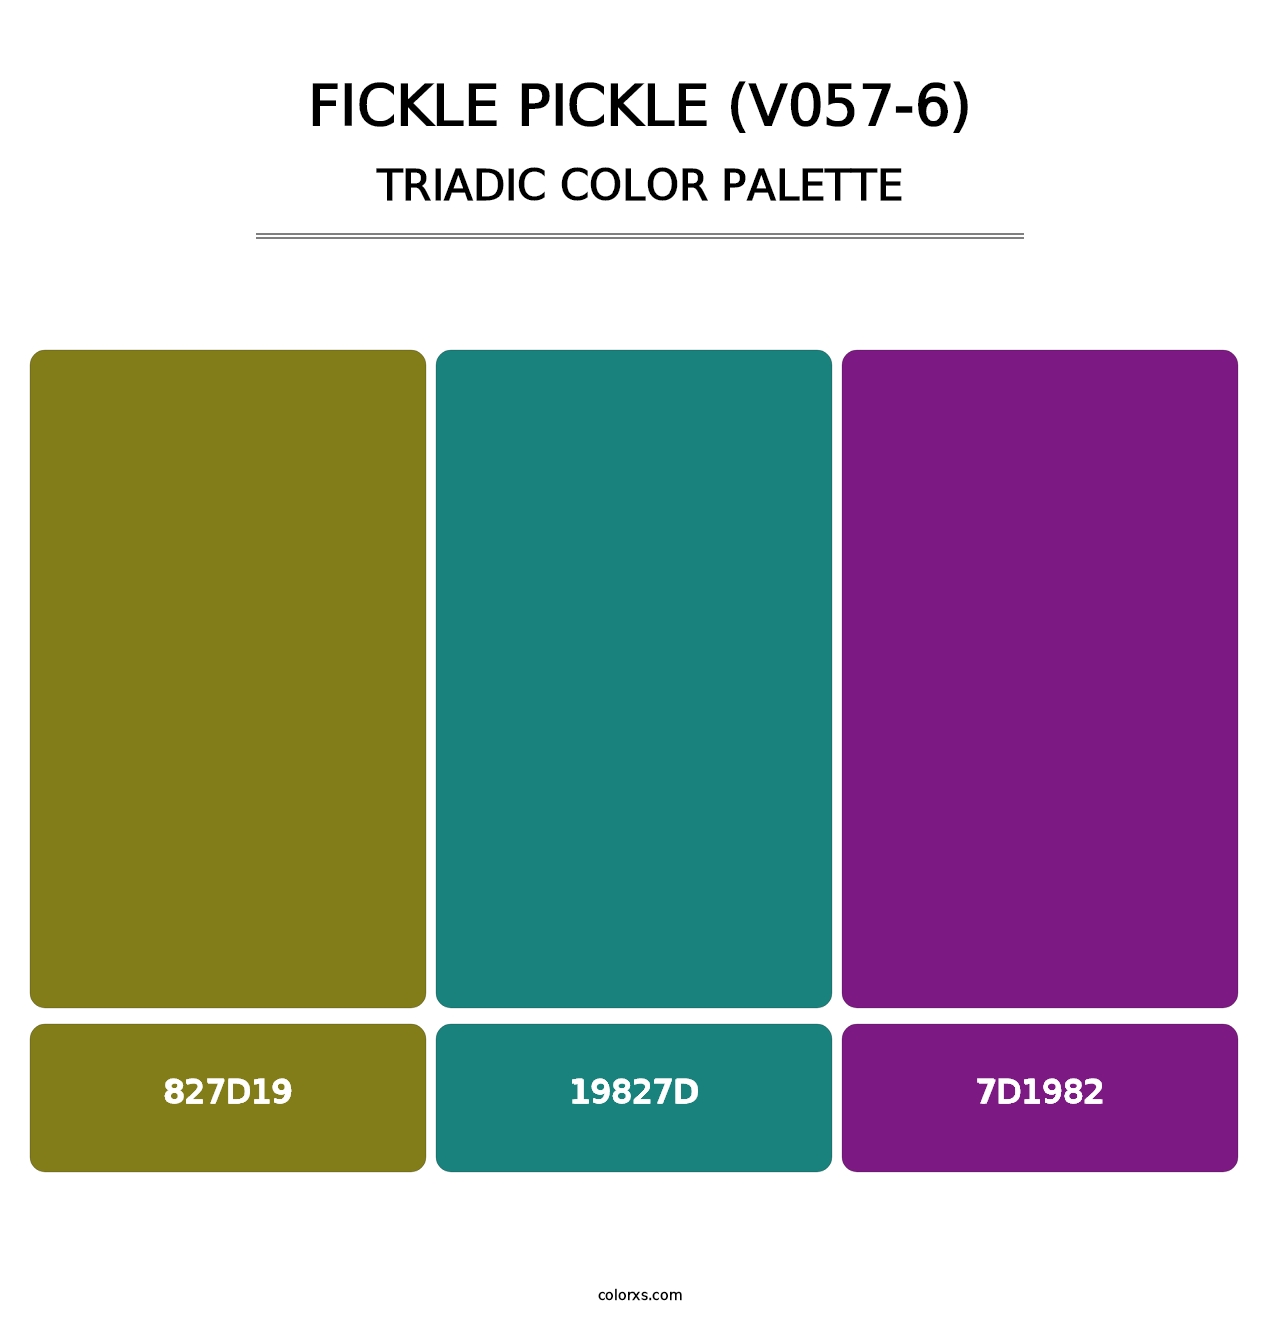 Fickle Pickle (V057-6) - Triadic Color Palette